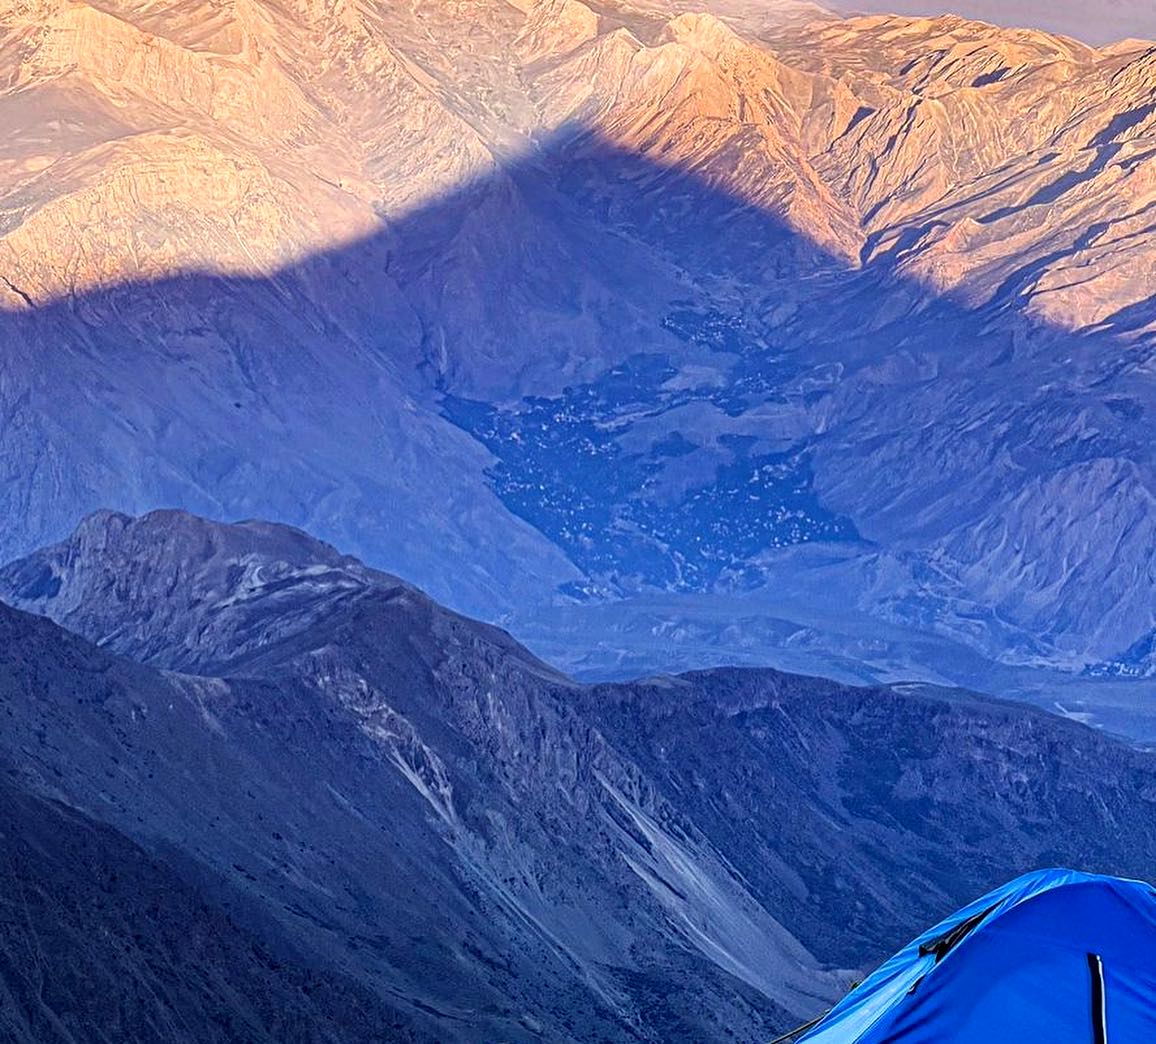 عکس متفاوت و دیده نشده سارا بهرامی در قله دماوند